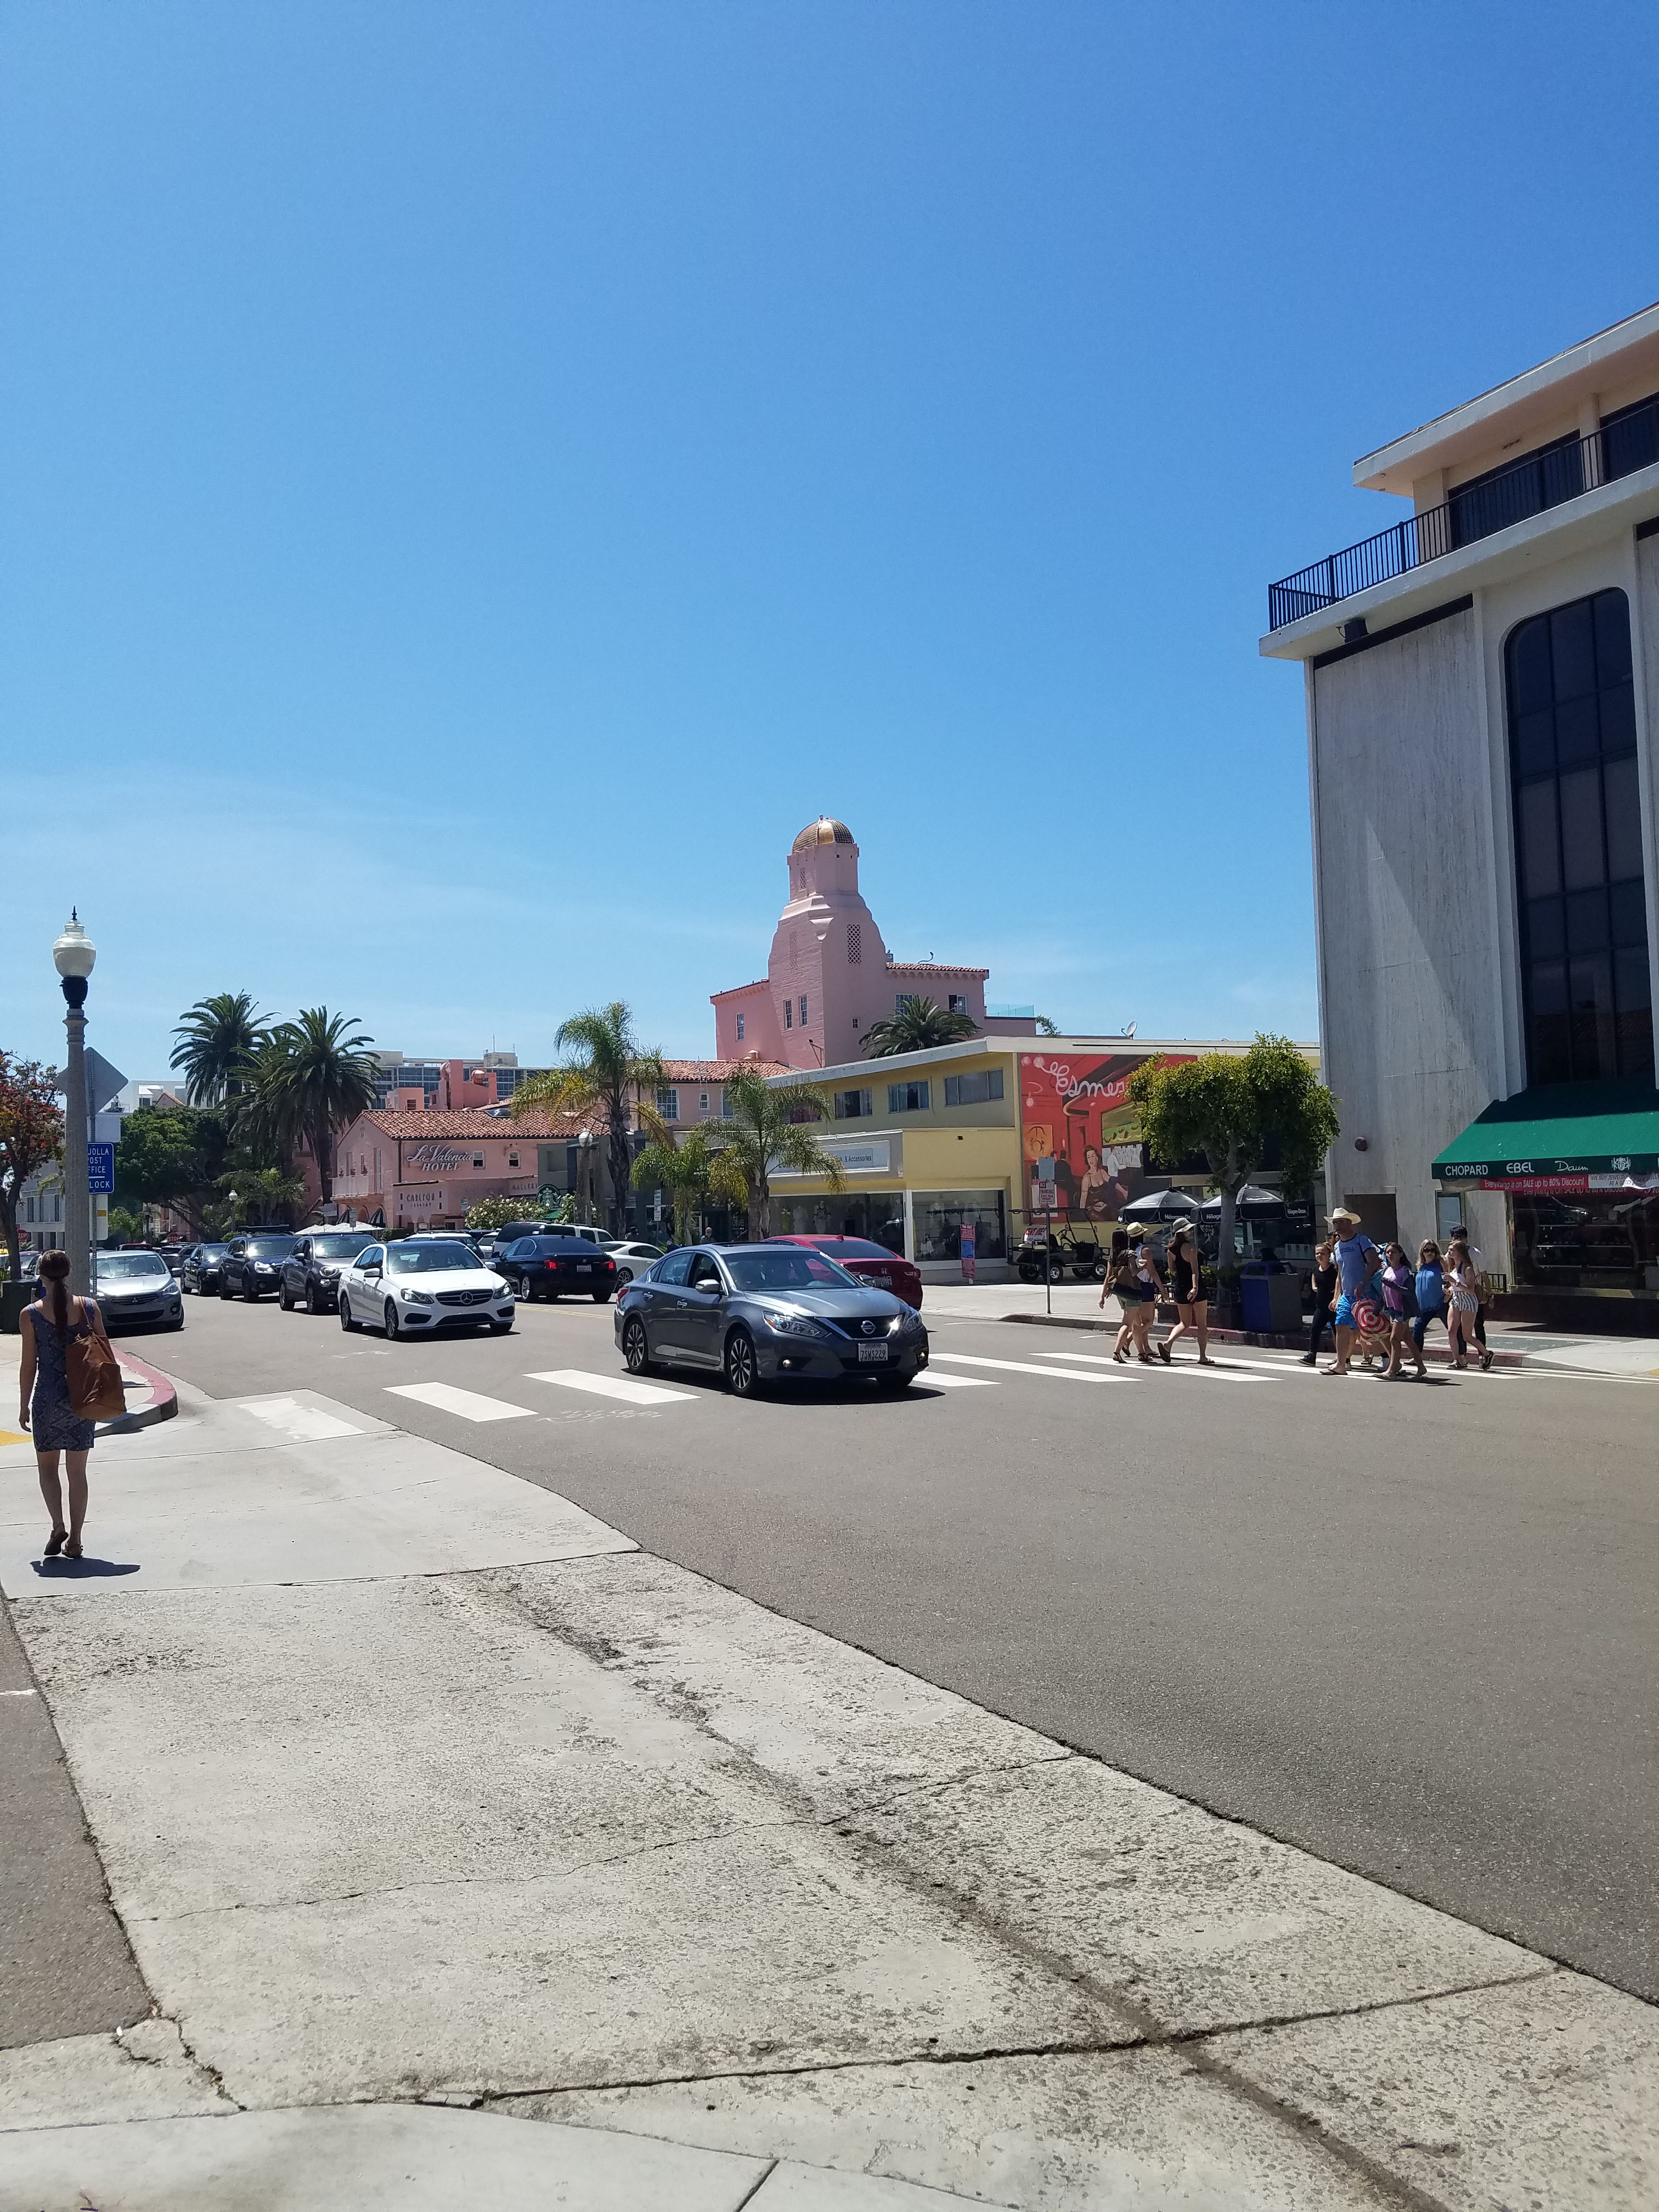 Downtown La Jolla Village